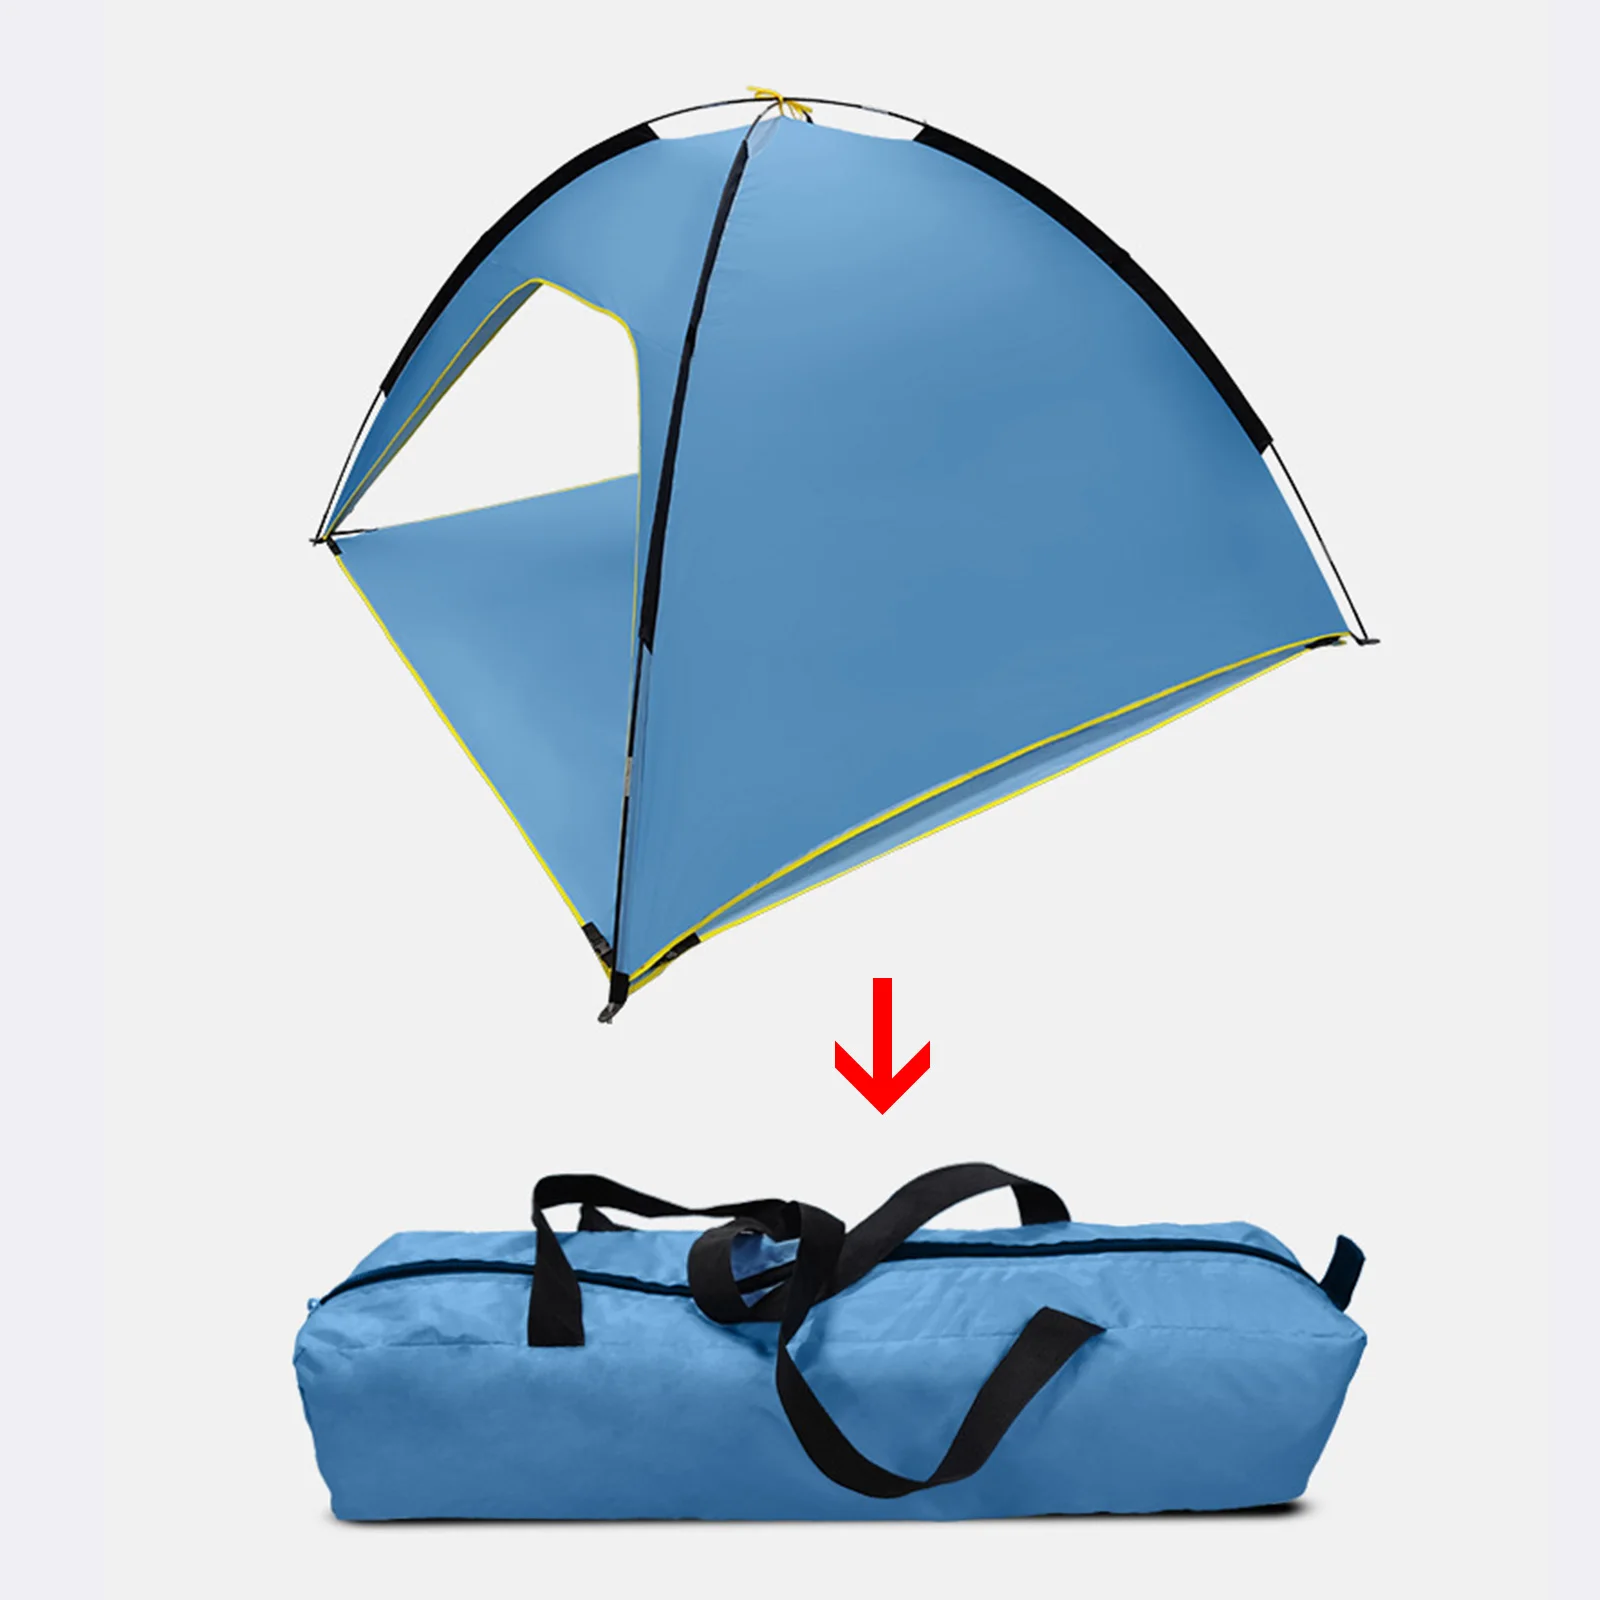 

Палатка с двойным полюсом, автоматический открытый тент от солнца, для отдыха на открытом воздухе, походов, Путешествий, Походов, летняя